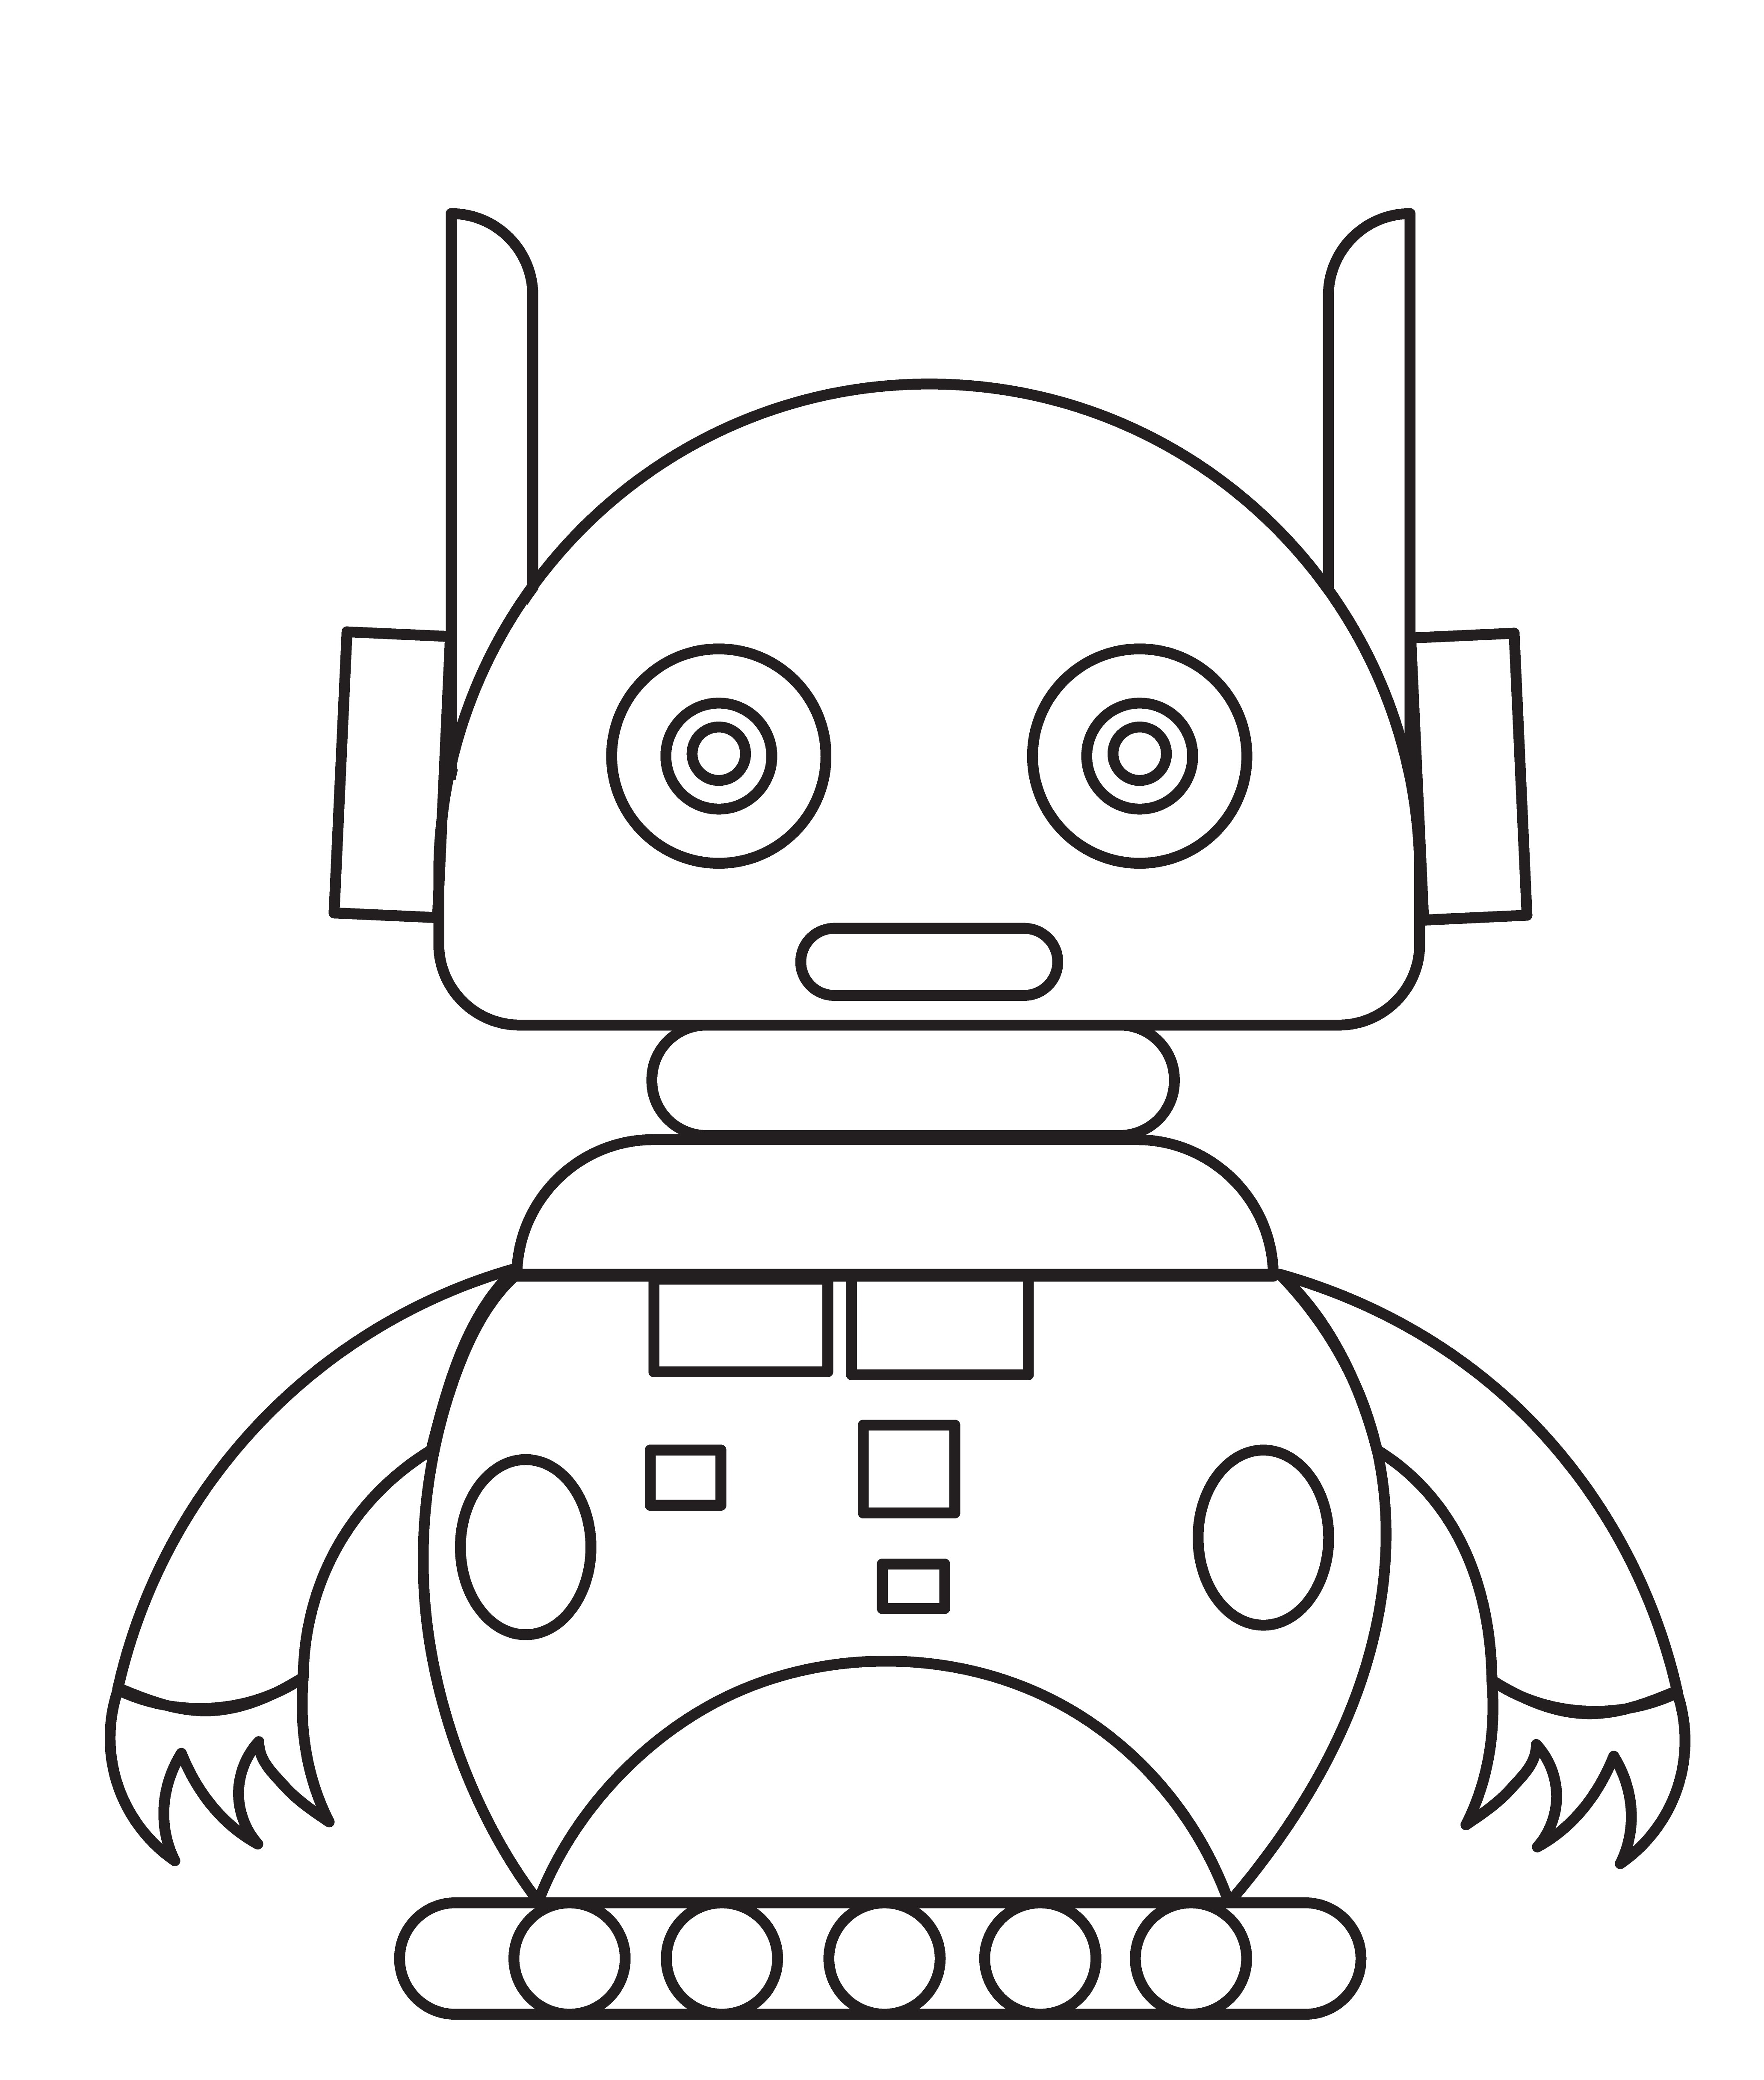 Раскраска робот андроид с когтями формата А4 в высоком качестве